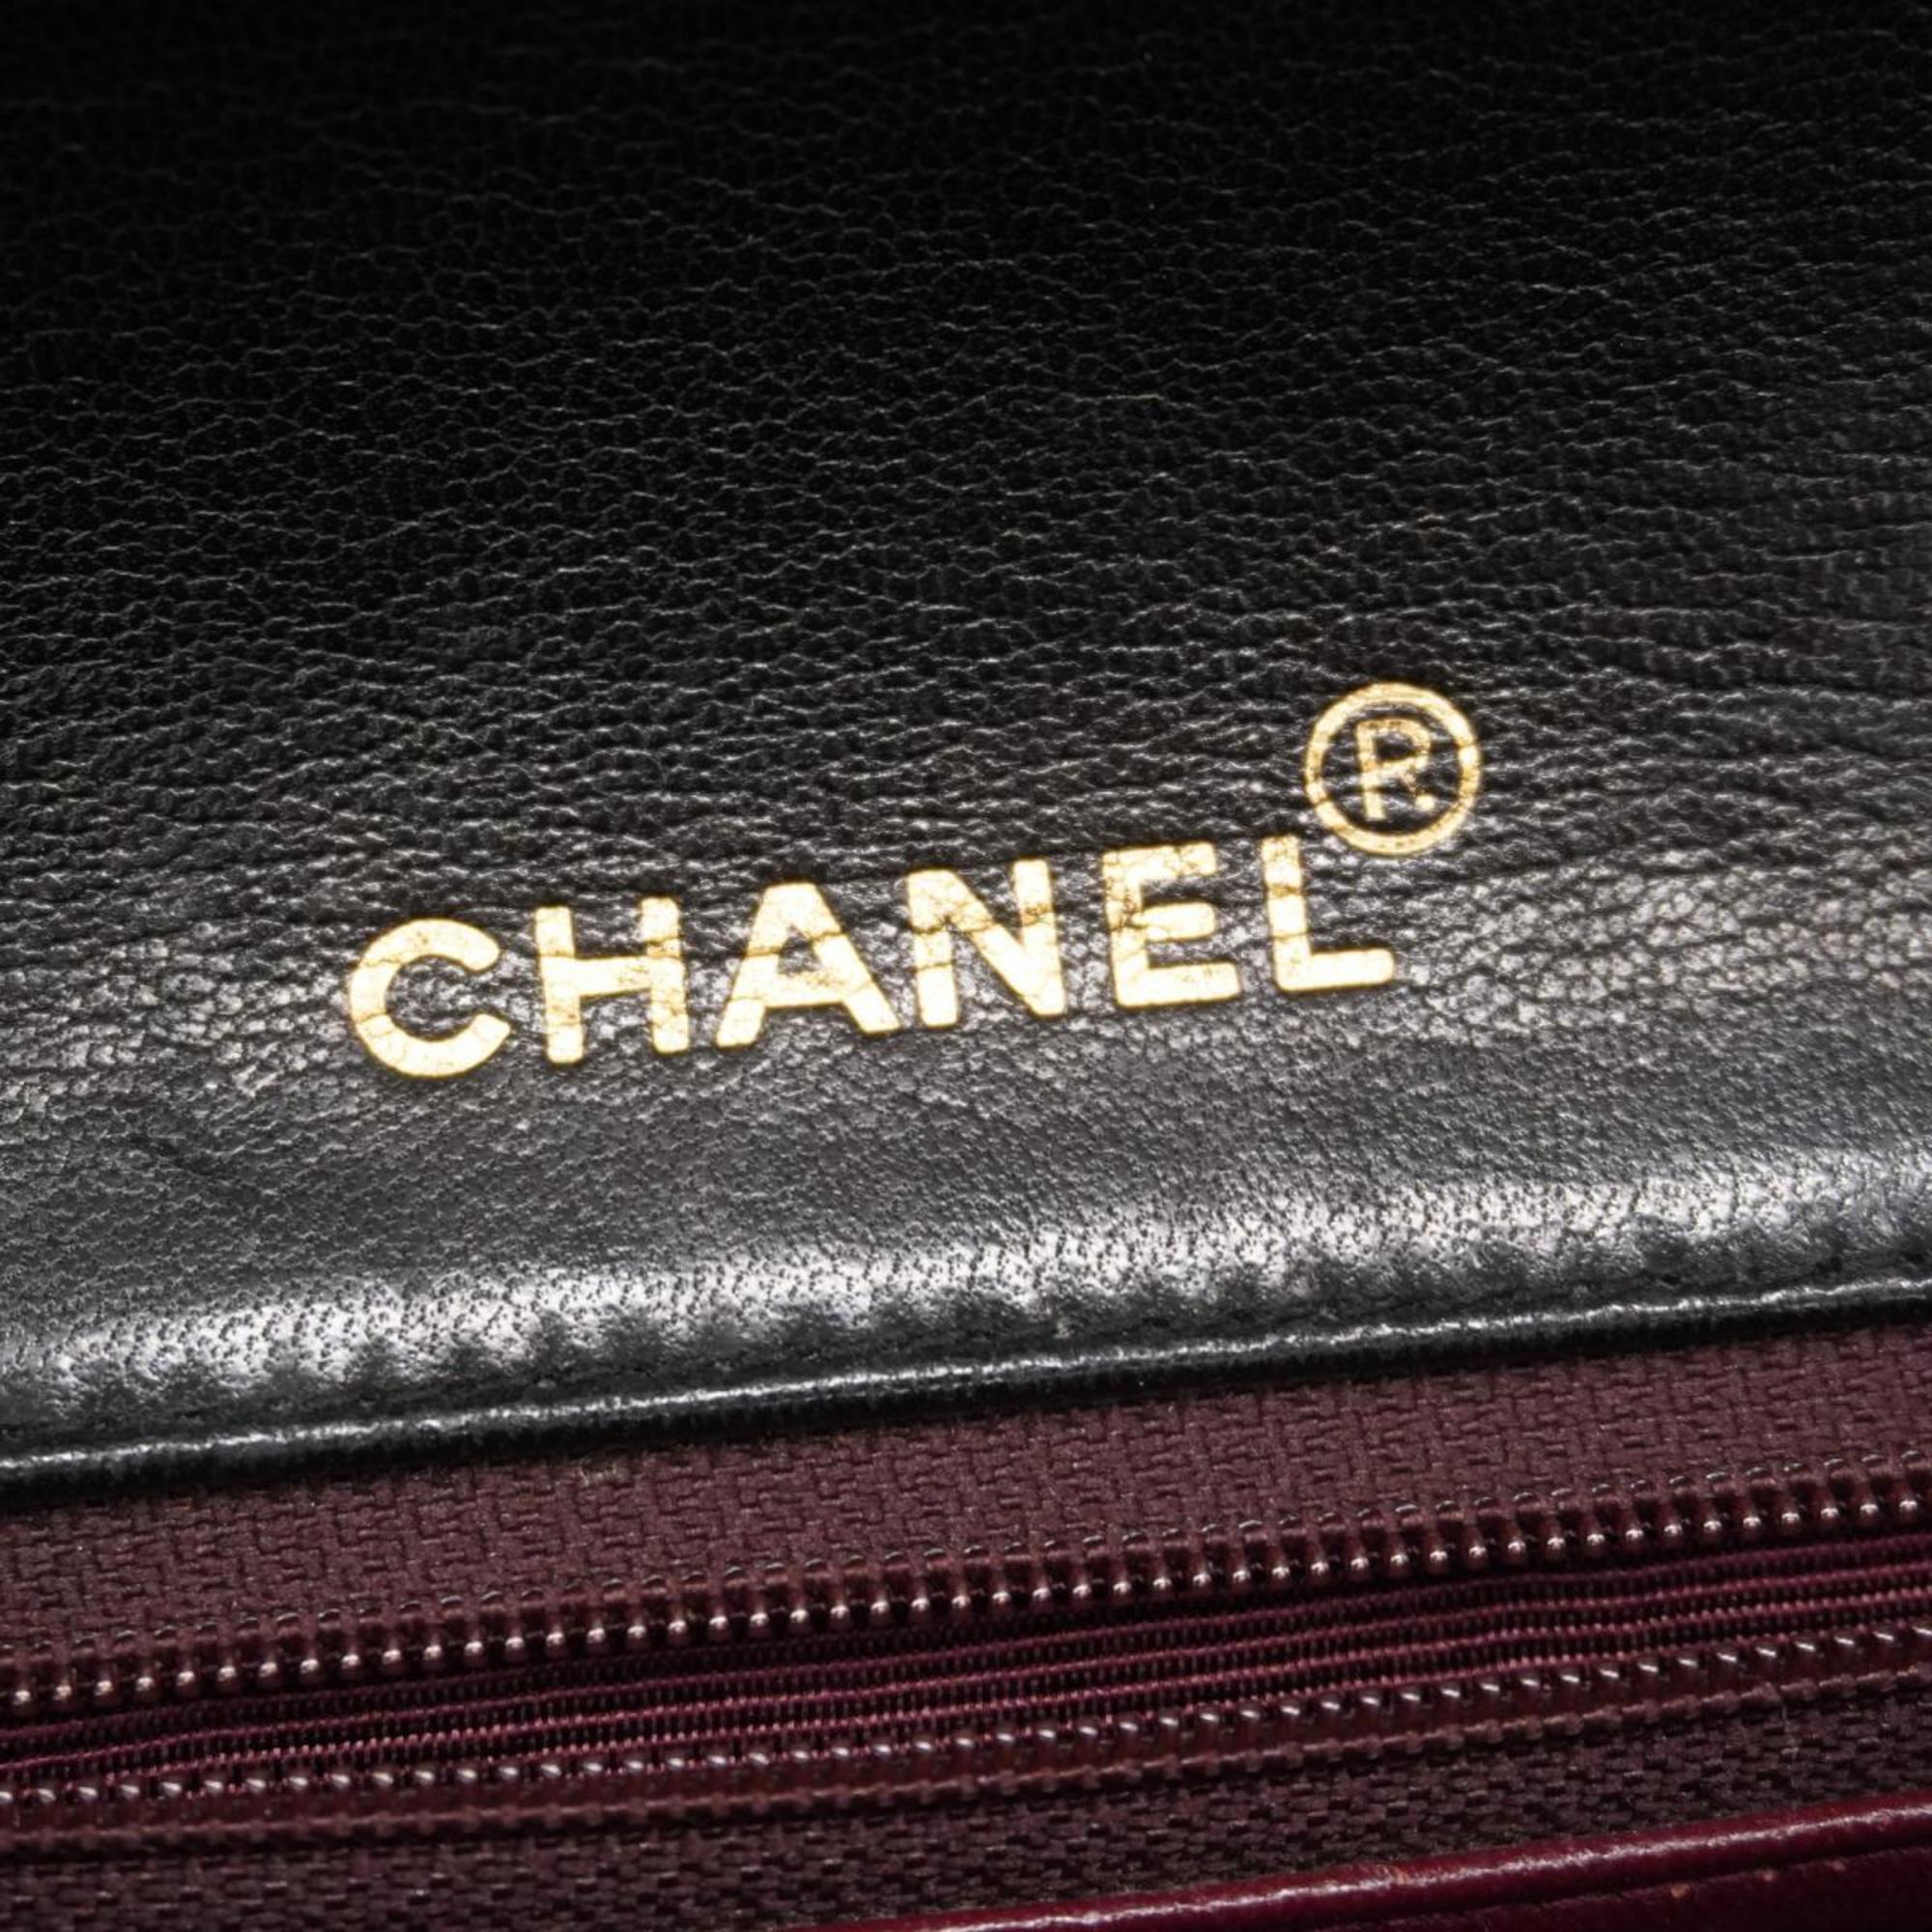 シャネル(Chanel) シャネル ショルダーバッグ マトラッセ チェーンショルダー ラムスキン ブラック   レディース